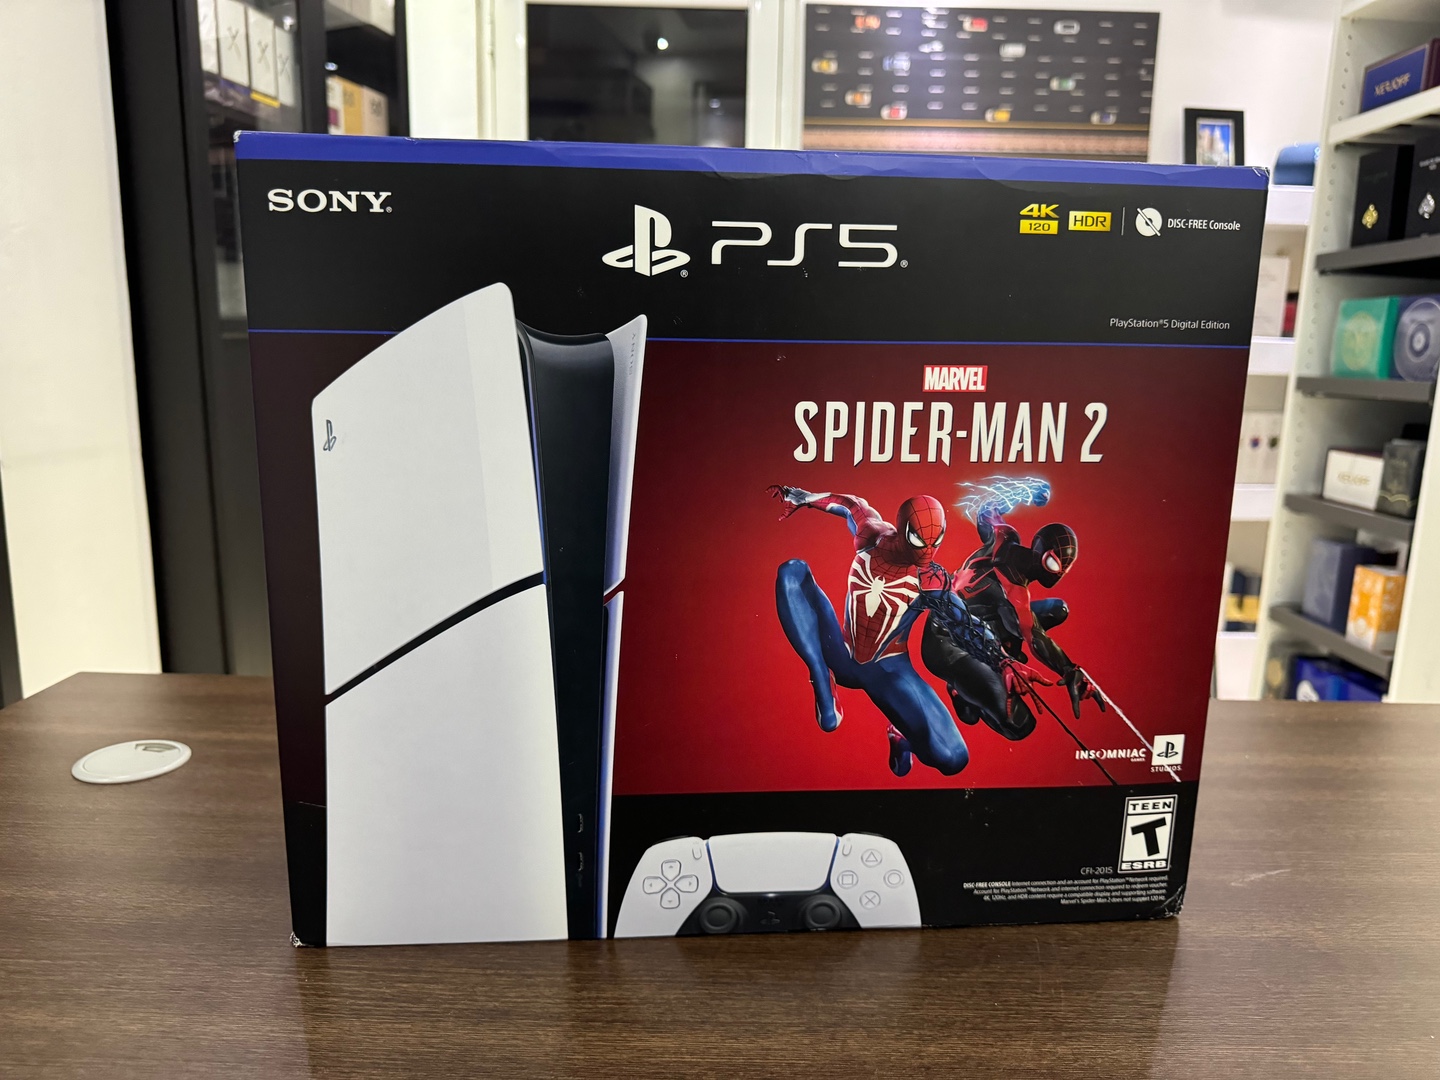 consolas y videojuegos - Consola Playstation 5 SLIM SpiderMan 2 Sellado Version Digital RD$ 30,500 NEG 0